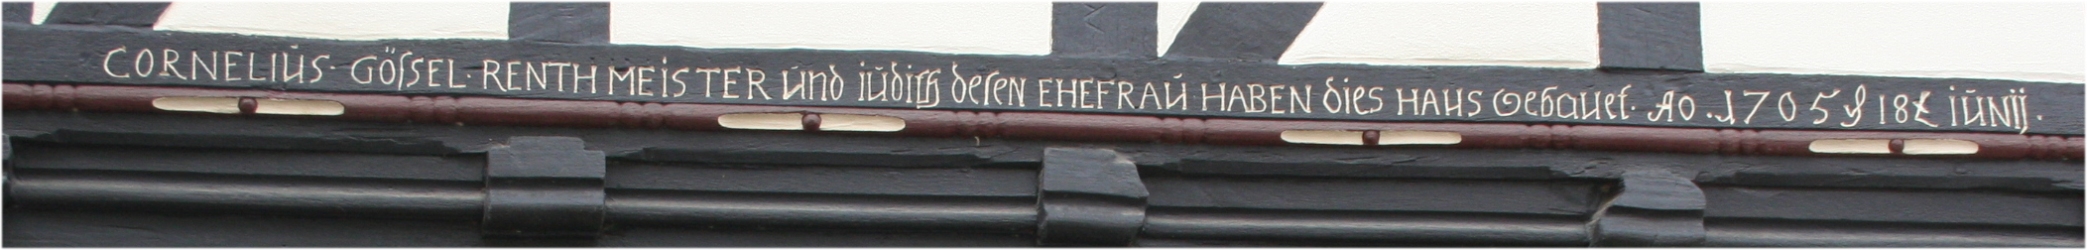 Balkeninschrift des Hauses vom Rentmeister Cornelius Gößel.